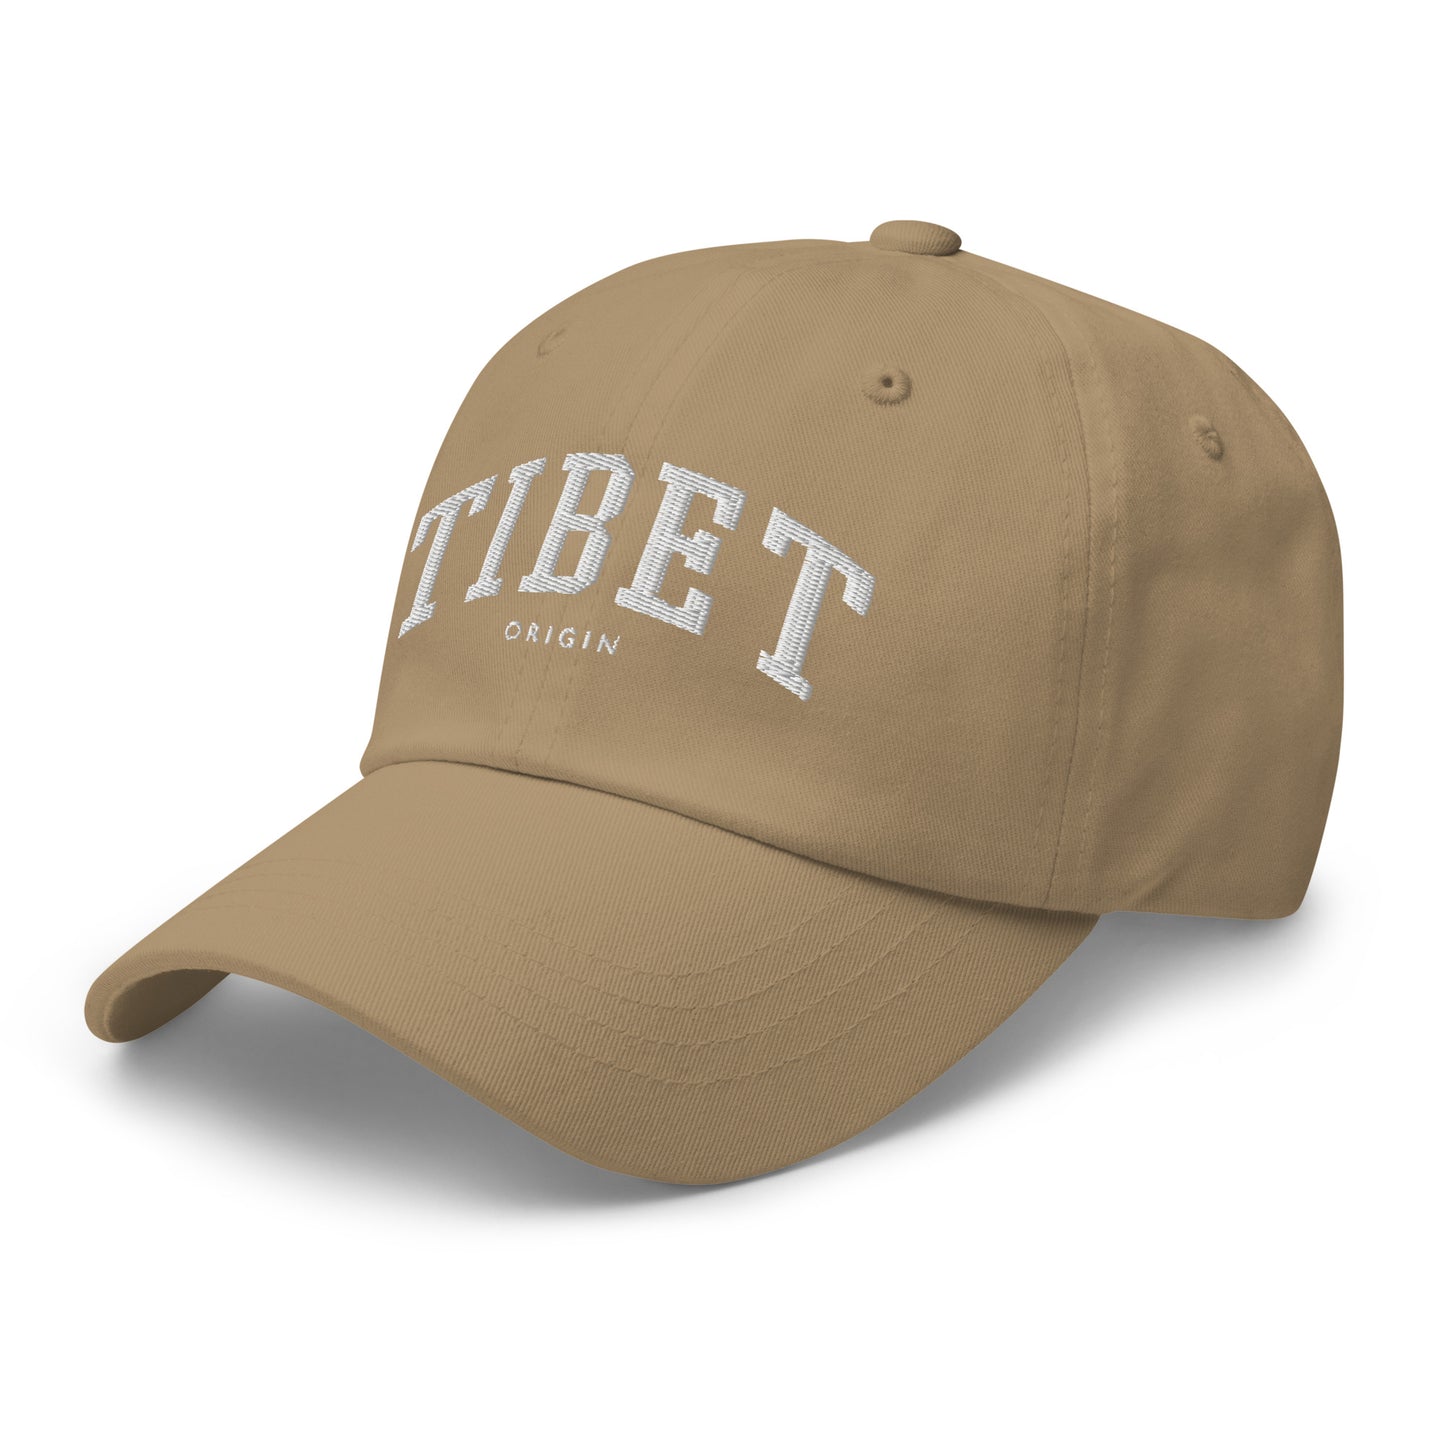 TIBET ORIGIN HAT